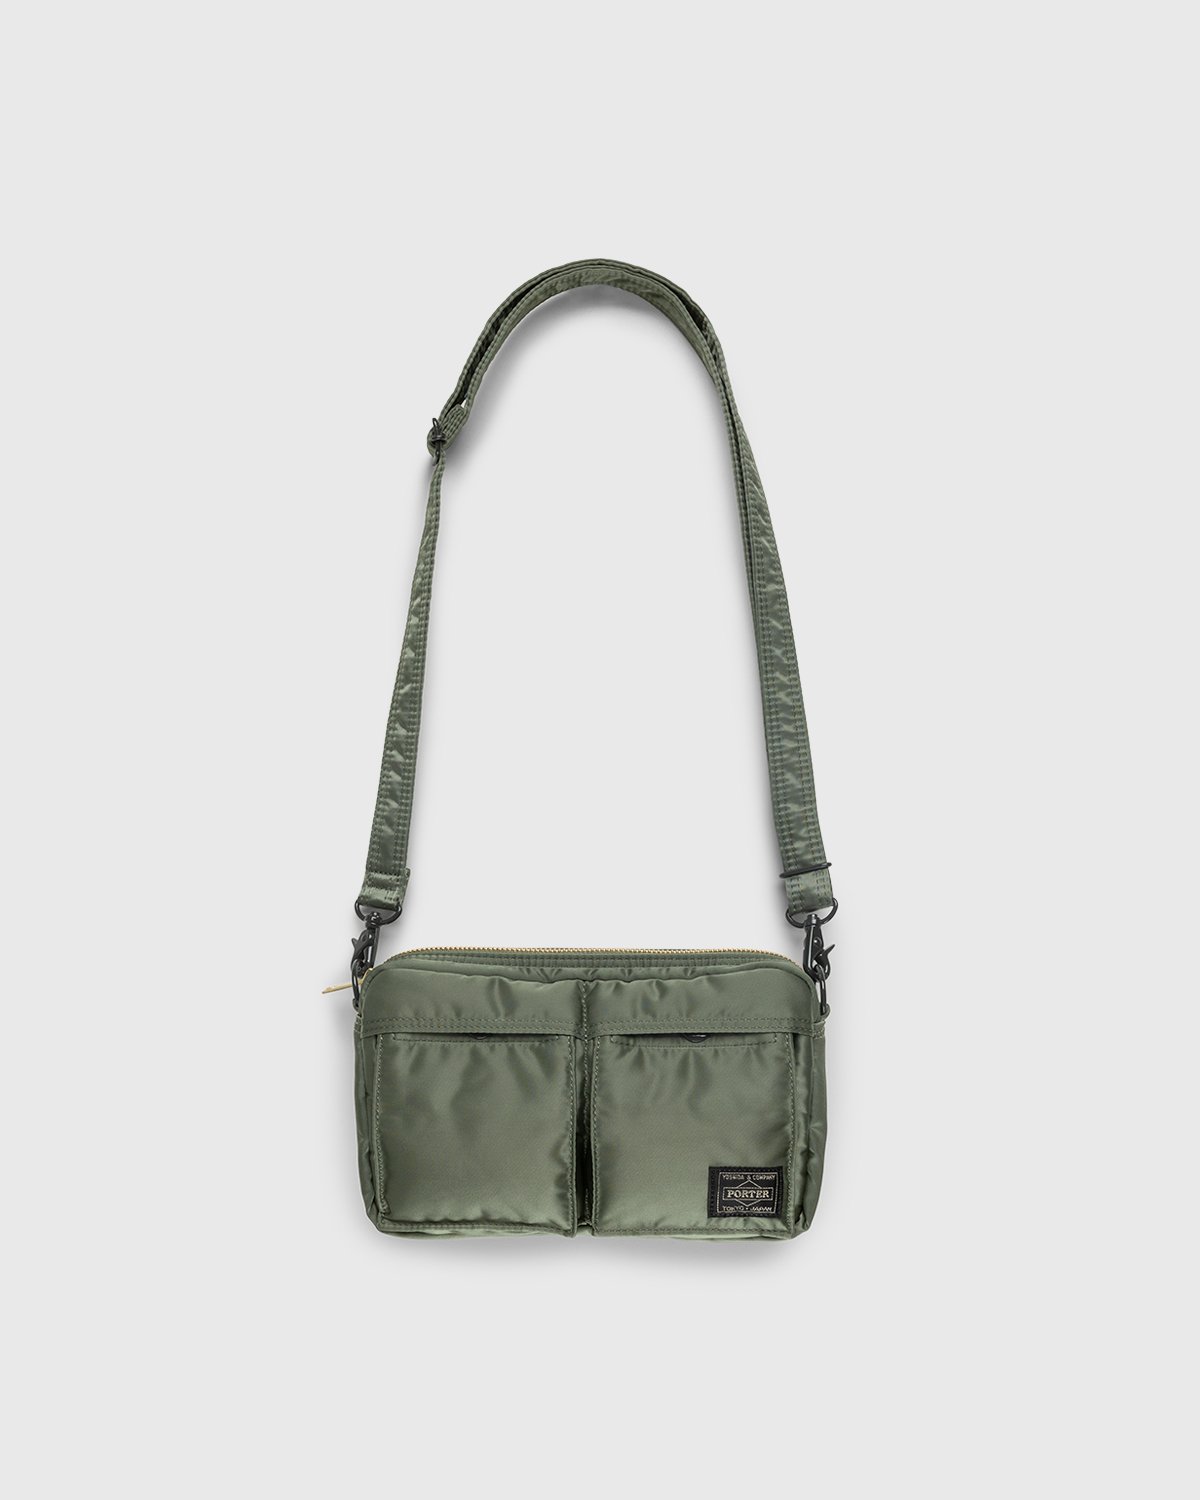 Porter-Yoshida & Co. - Tanker Shoulder Bag Sage Green - Accessories - Green - Image 1